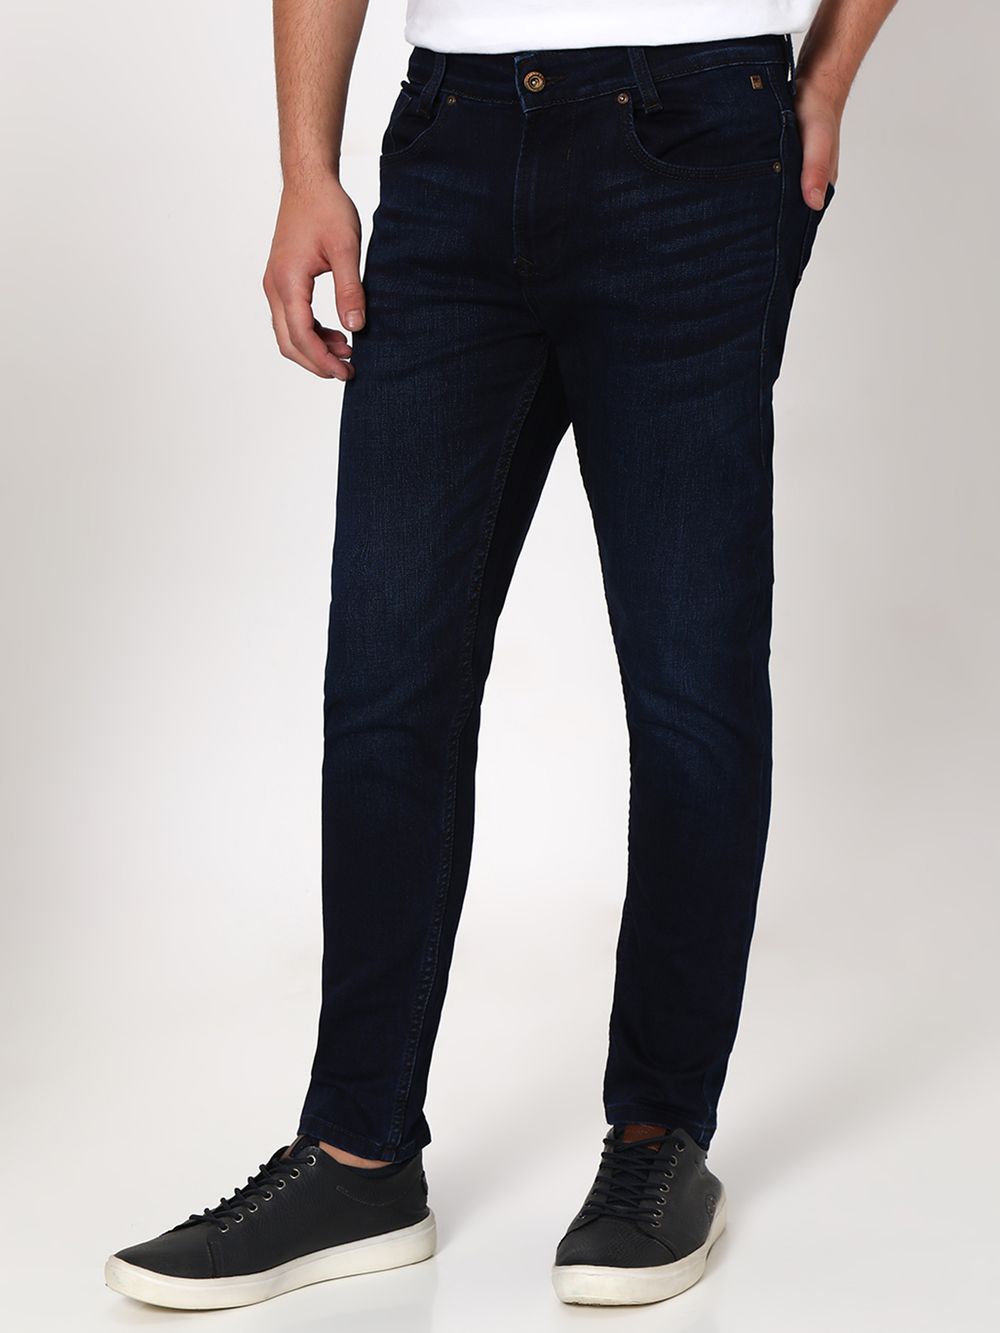 Deep Indigo Blue Ankle Length Originals Stretch Jeans